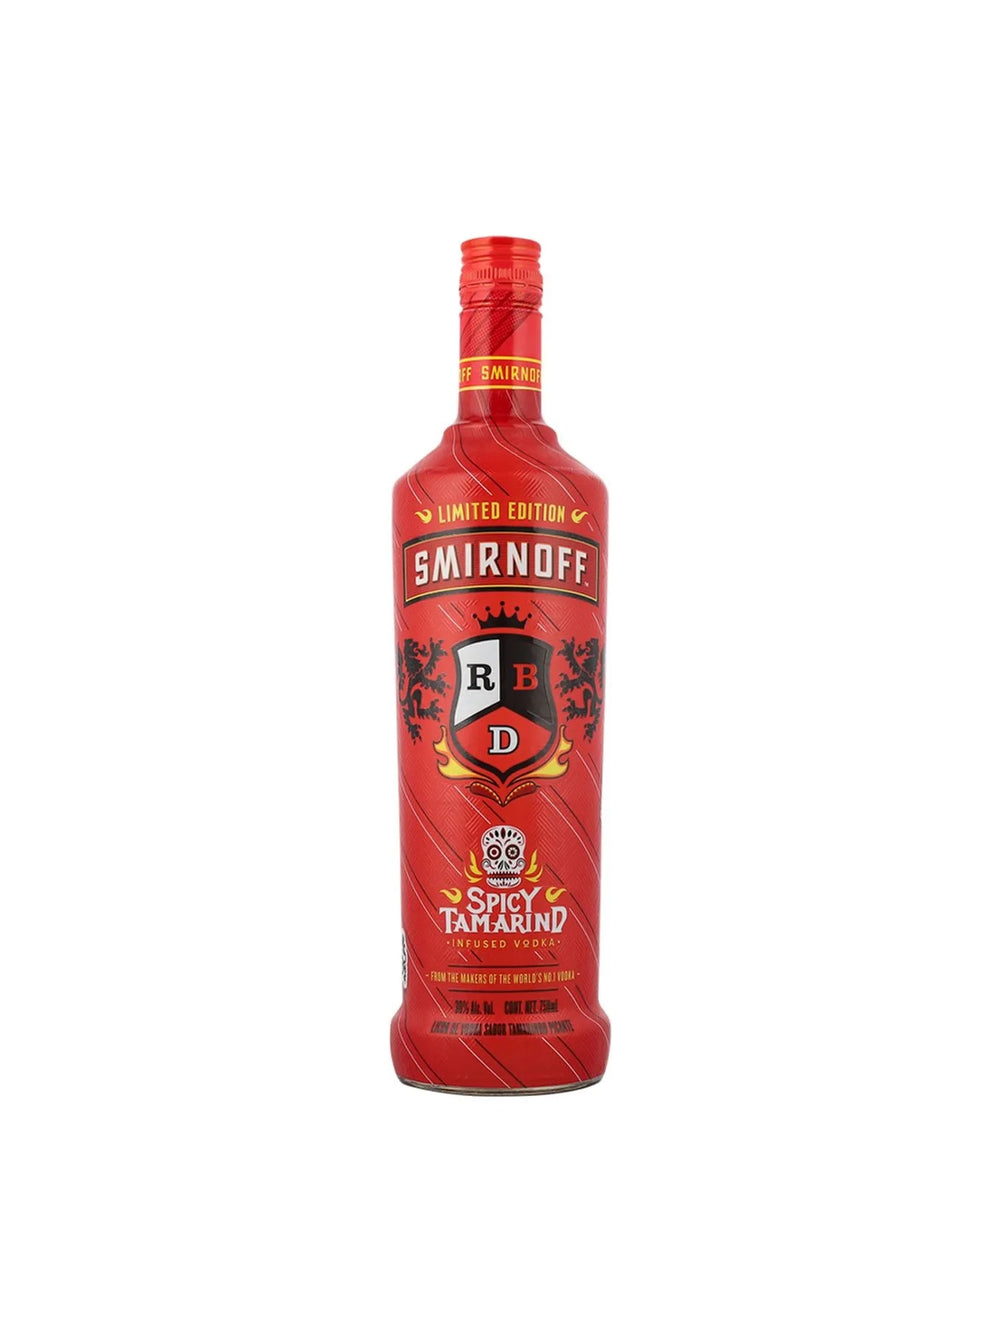 Vodka Smirnoff X-1 Spicy Tamarind Edic Rbd - 750 Ml